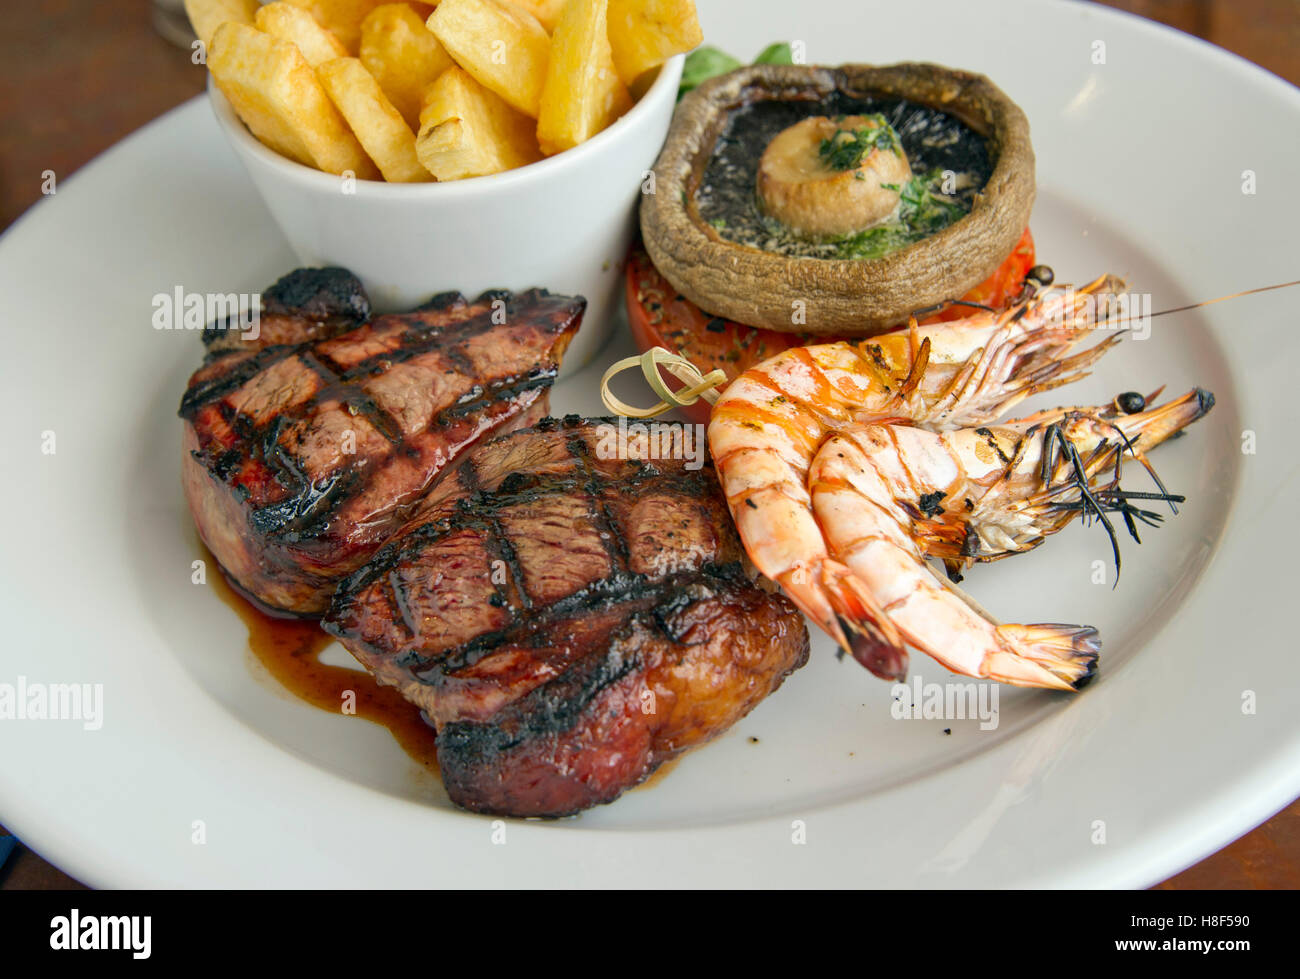 Surf & Turf, steak servi avec des chips de crevettes, champignons et fruits de mer des aliments au Royaume-Uni. Banque D'Images